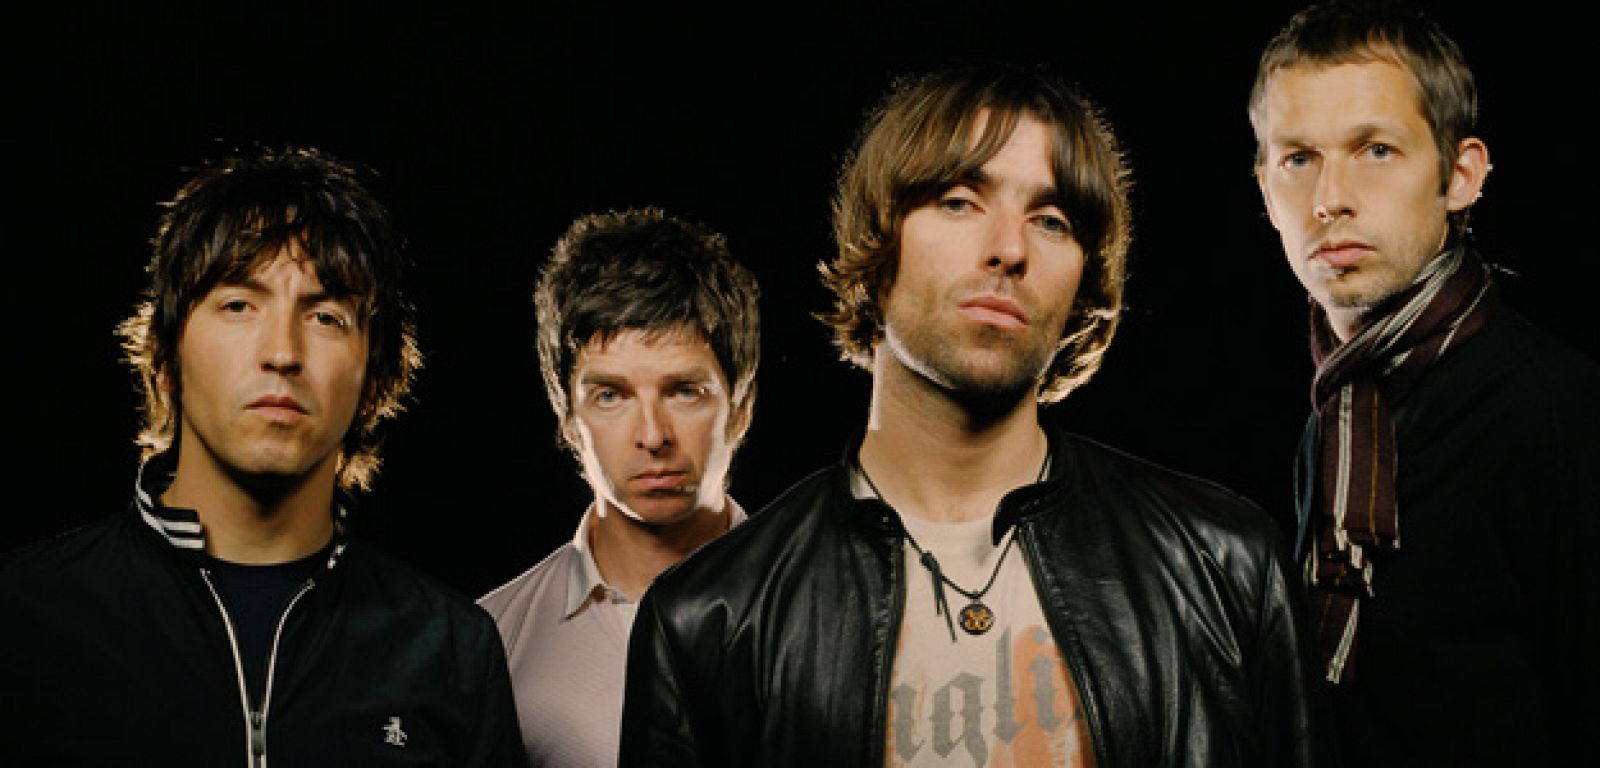 El recopilatorio reunirá lo mejor del repertorio de la banda de los hermanos Gallagher.